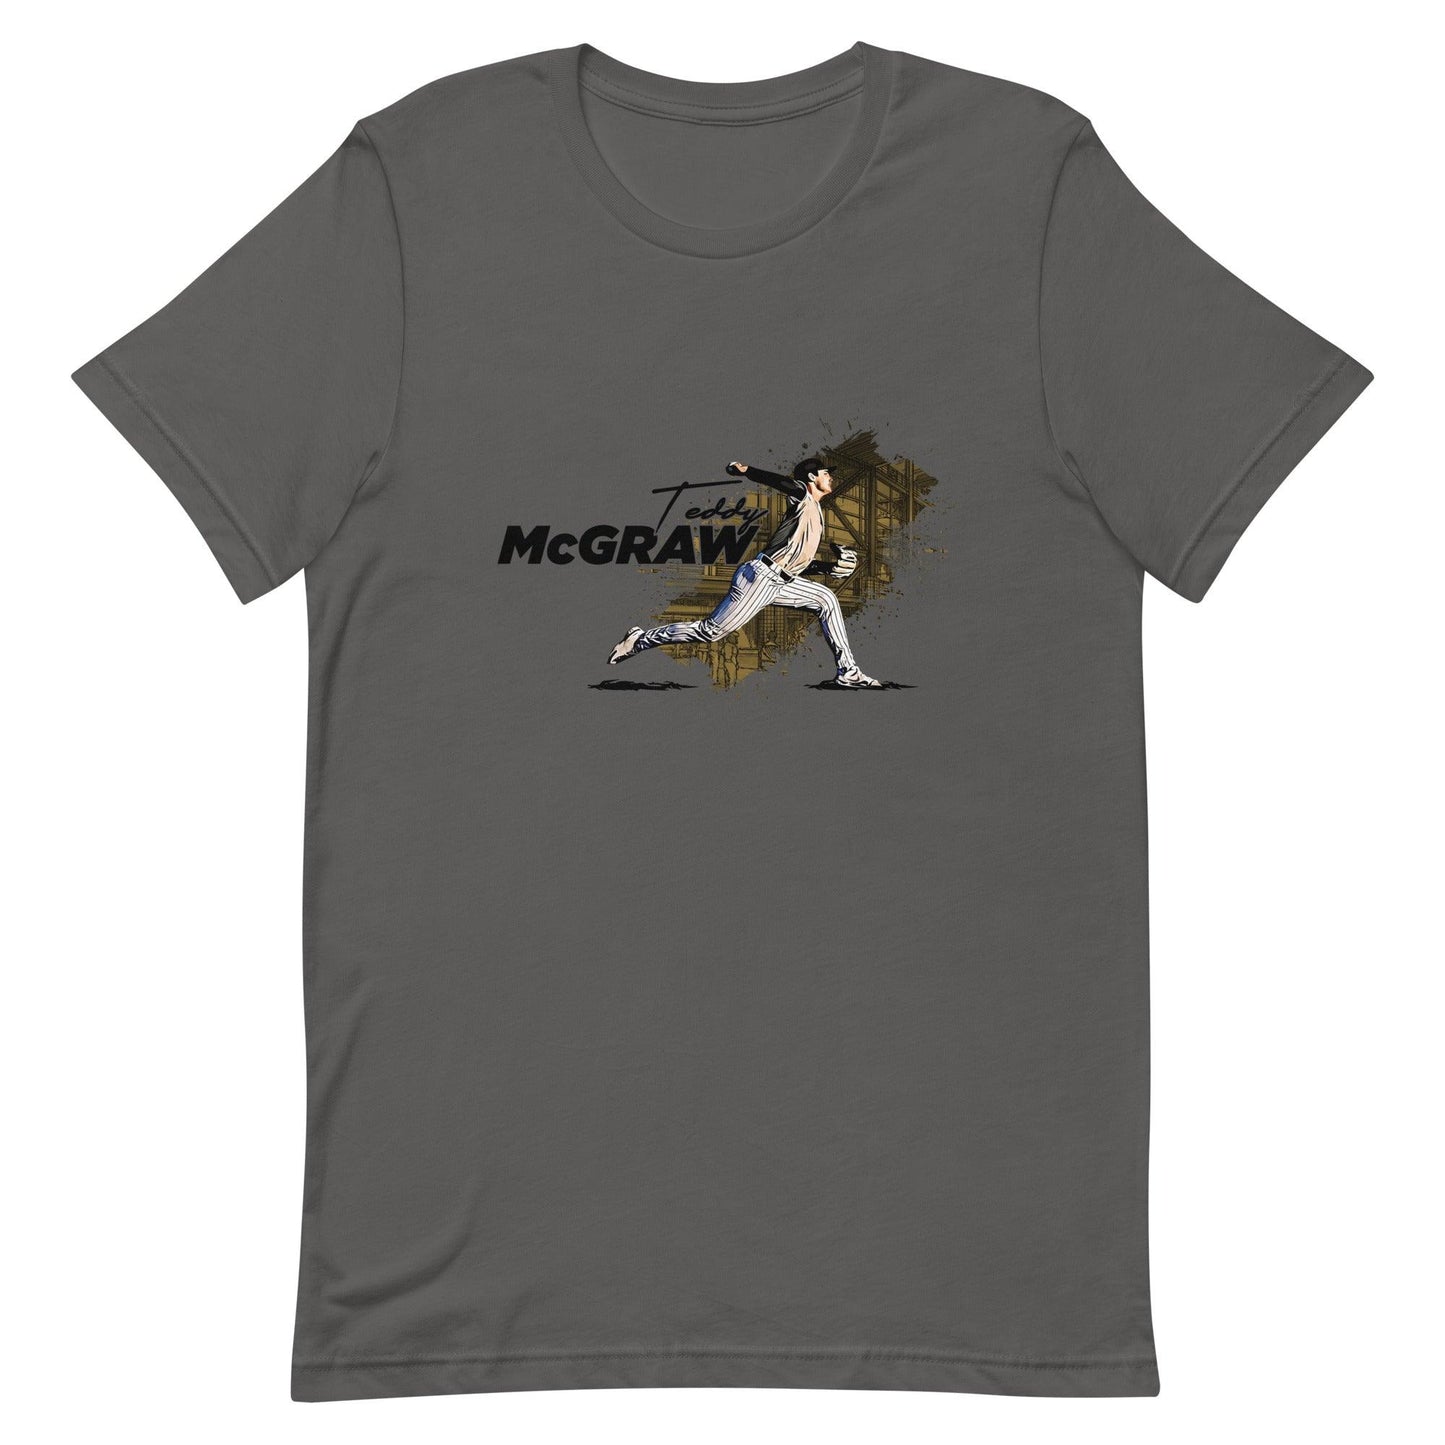 Teddy McGraw “Essential” t-shirt - Fan Arch